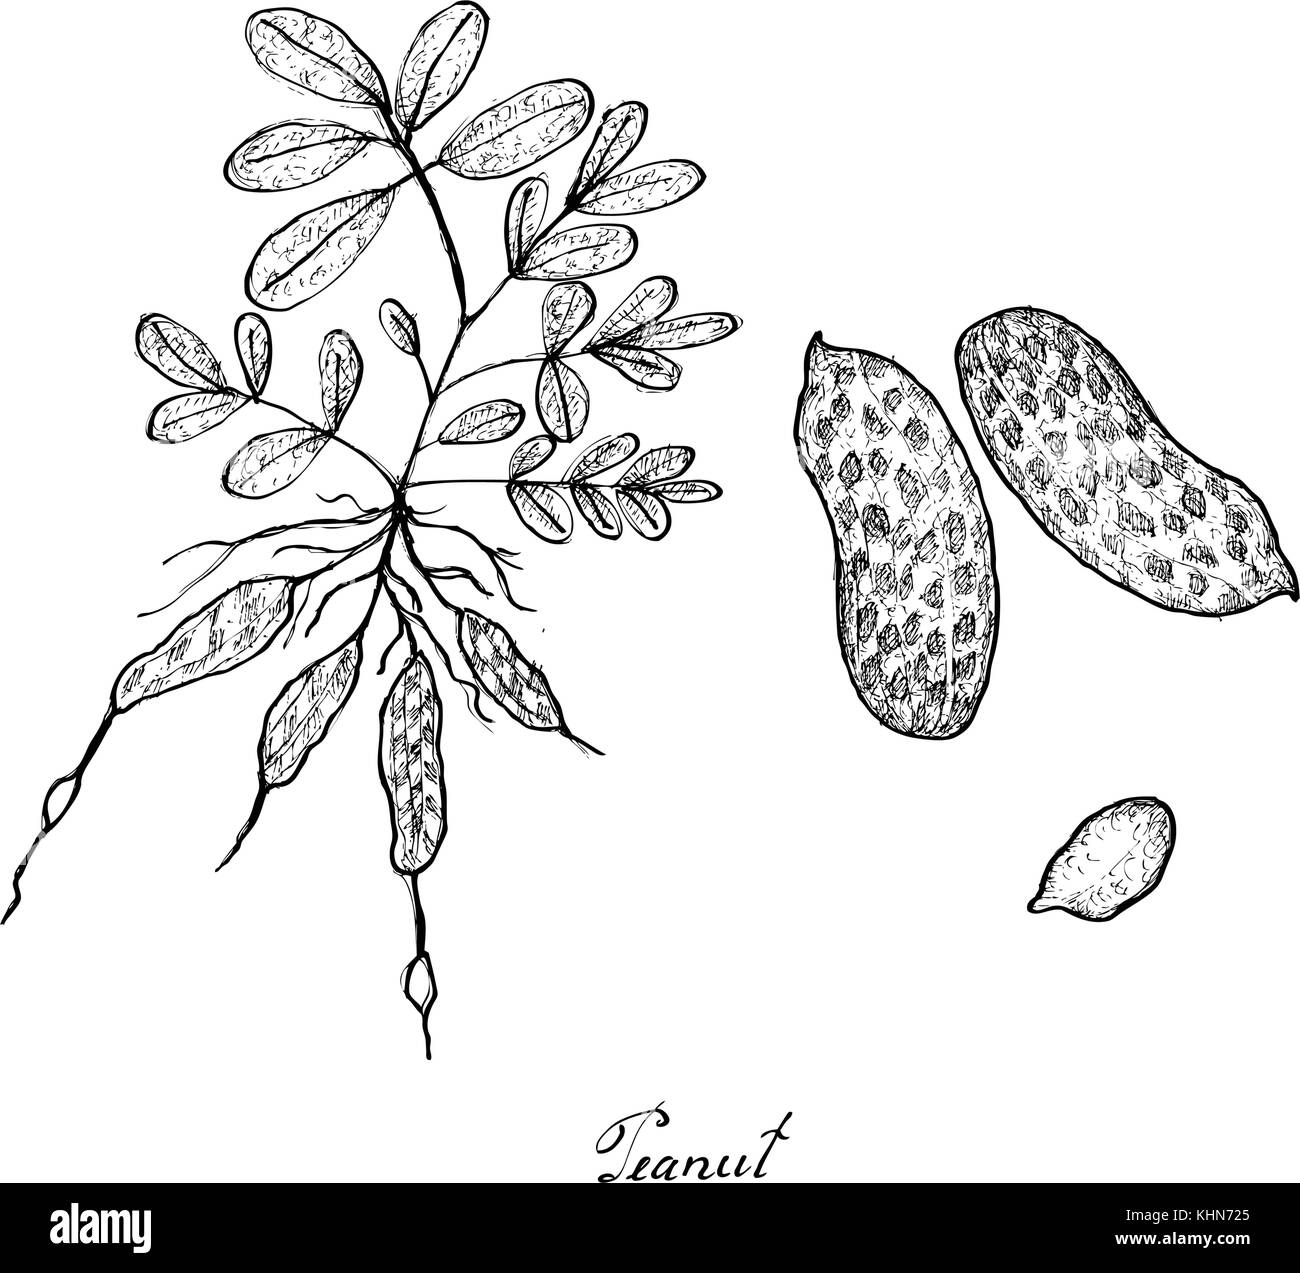 Groundnut isolated peanut peeled seeds sketch  Stock Illustration  61014035  PIXTA